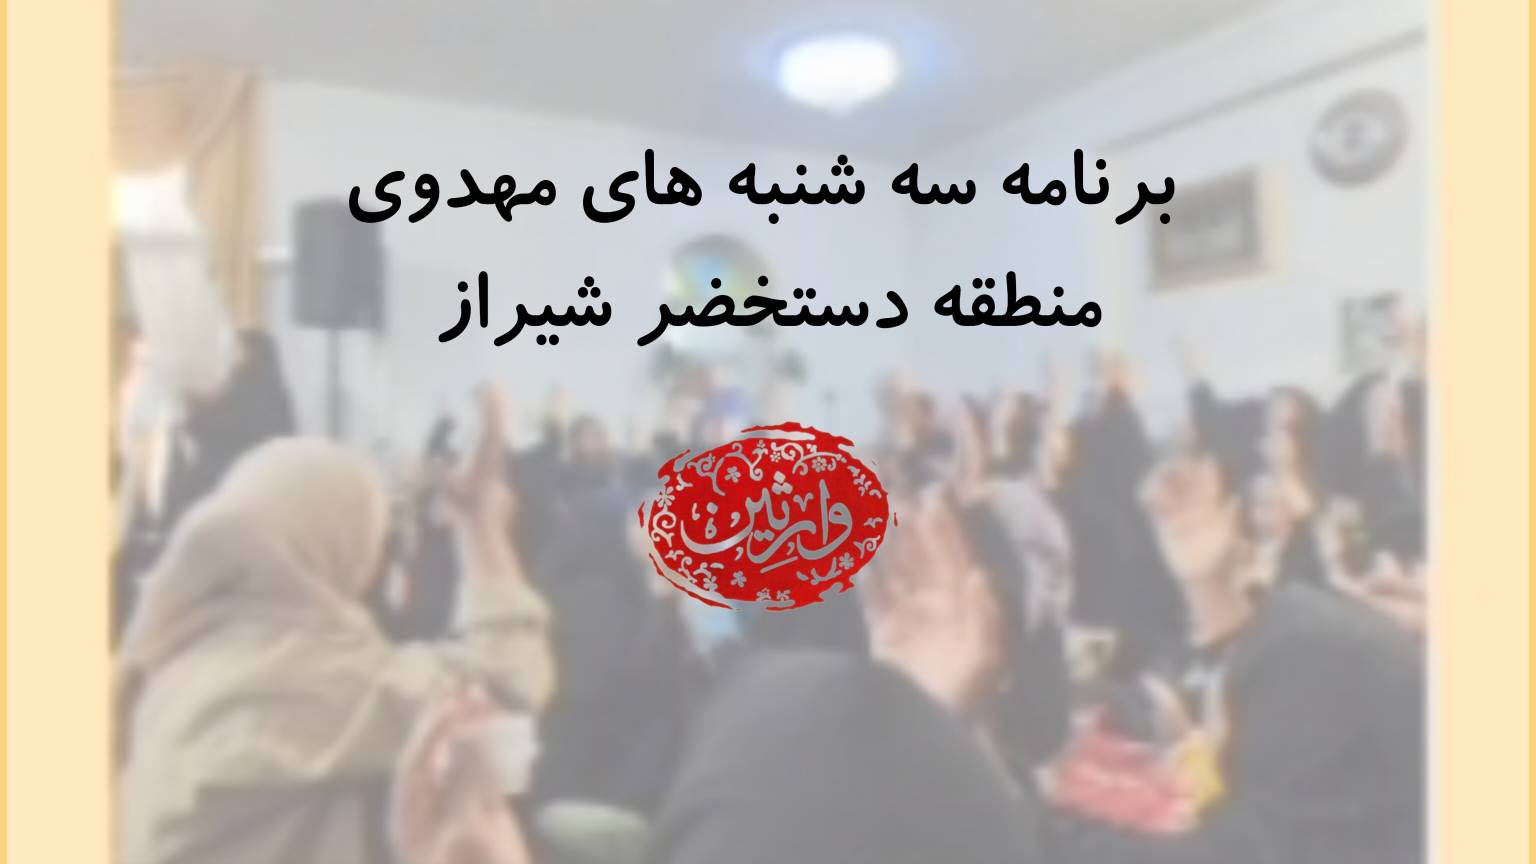  برنامه سه شنبه های مهدوی منطقه دستخضر شیراز